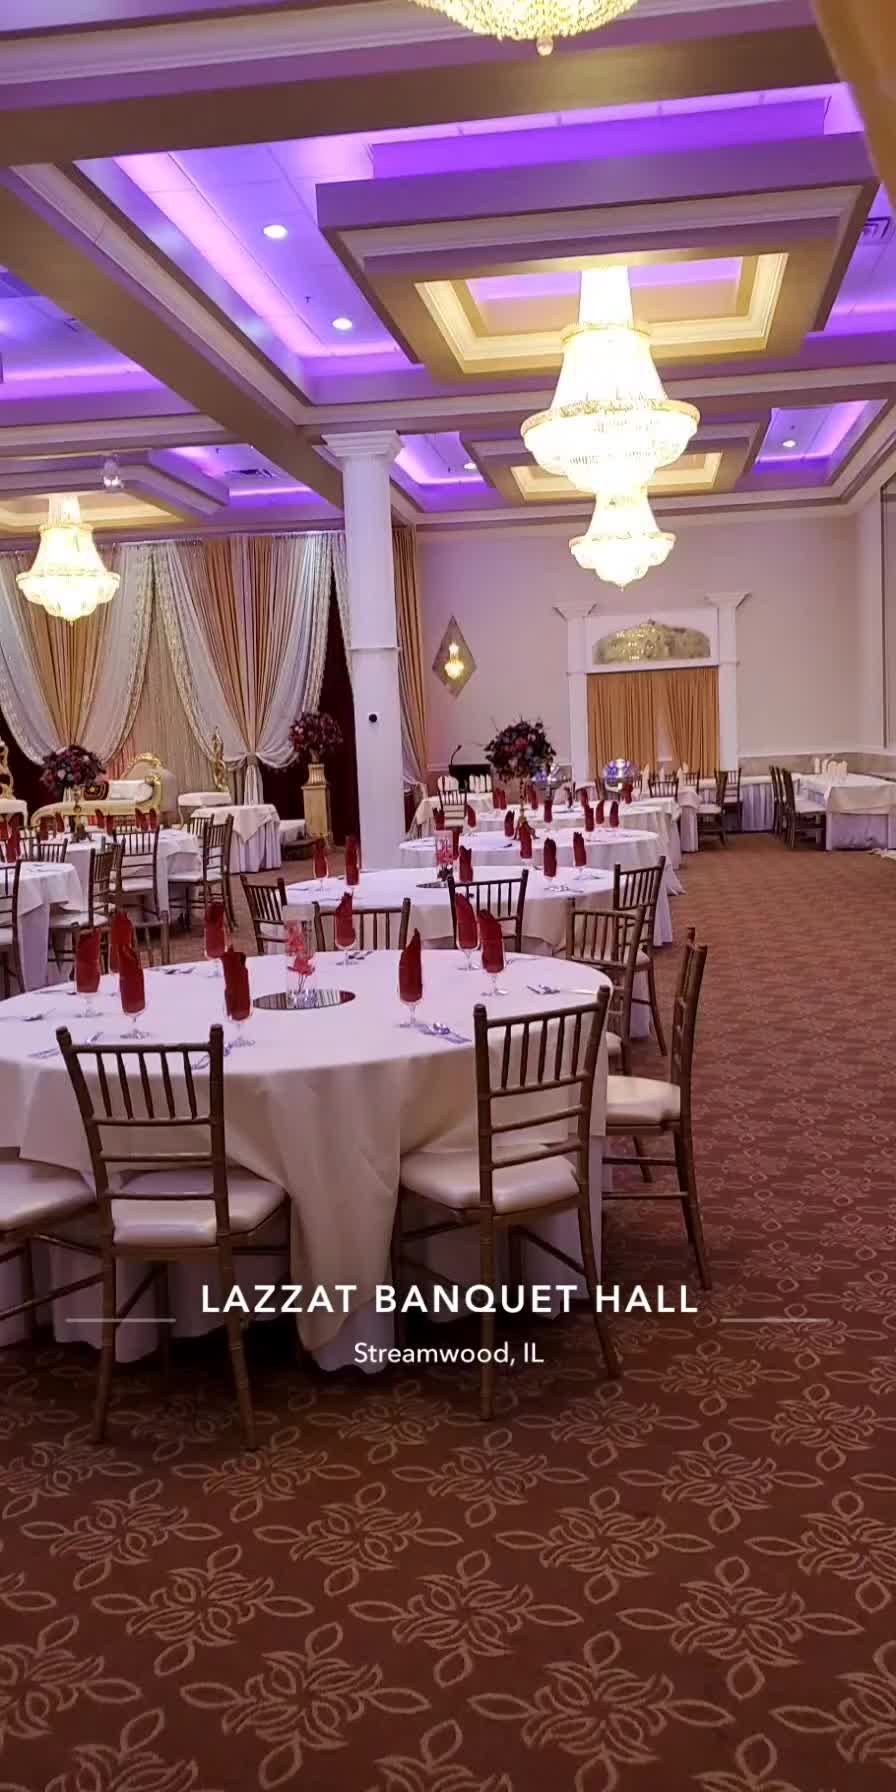 Lazzat Banquet